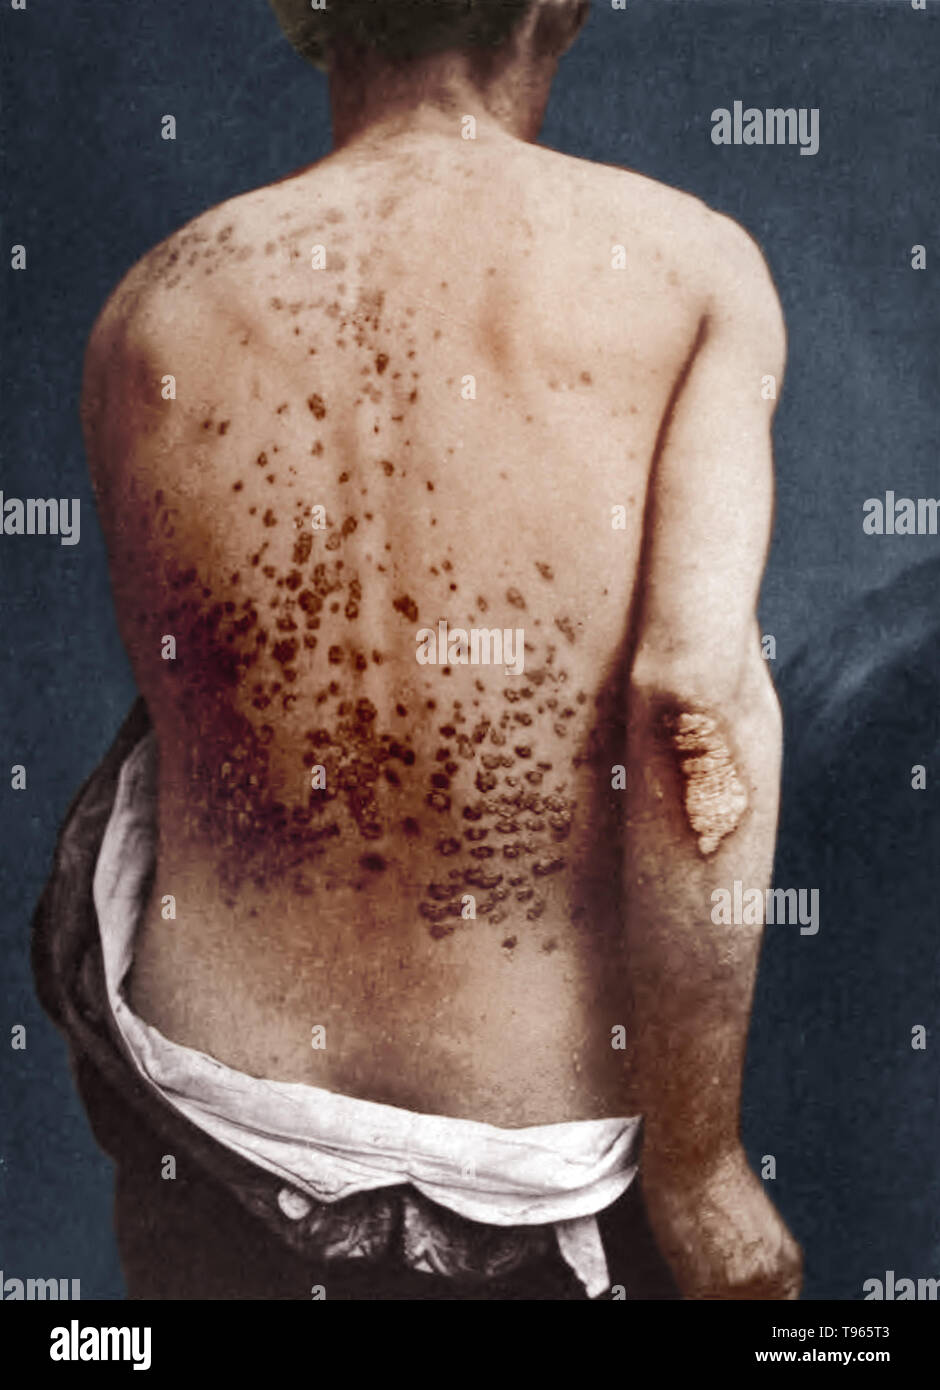 Guttate psoriasis sur le dos et le bras d'un homme, photographié par George Henry Fox, 1886. Guttate psoriasis est une maladie de la peau qui prend la forme de petites lésions sur la peau. C'est habituellement le résultat d'une infection bactérienne. Elles apparaissent le plus le mot est dérivé du mot latin signifiant gutta, drop. Banque D'Images